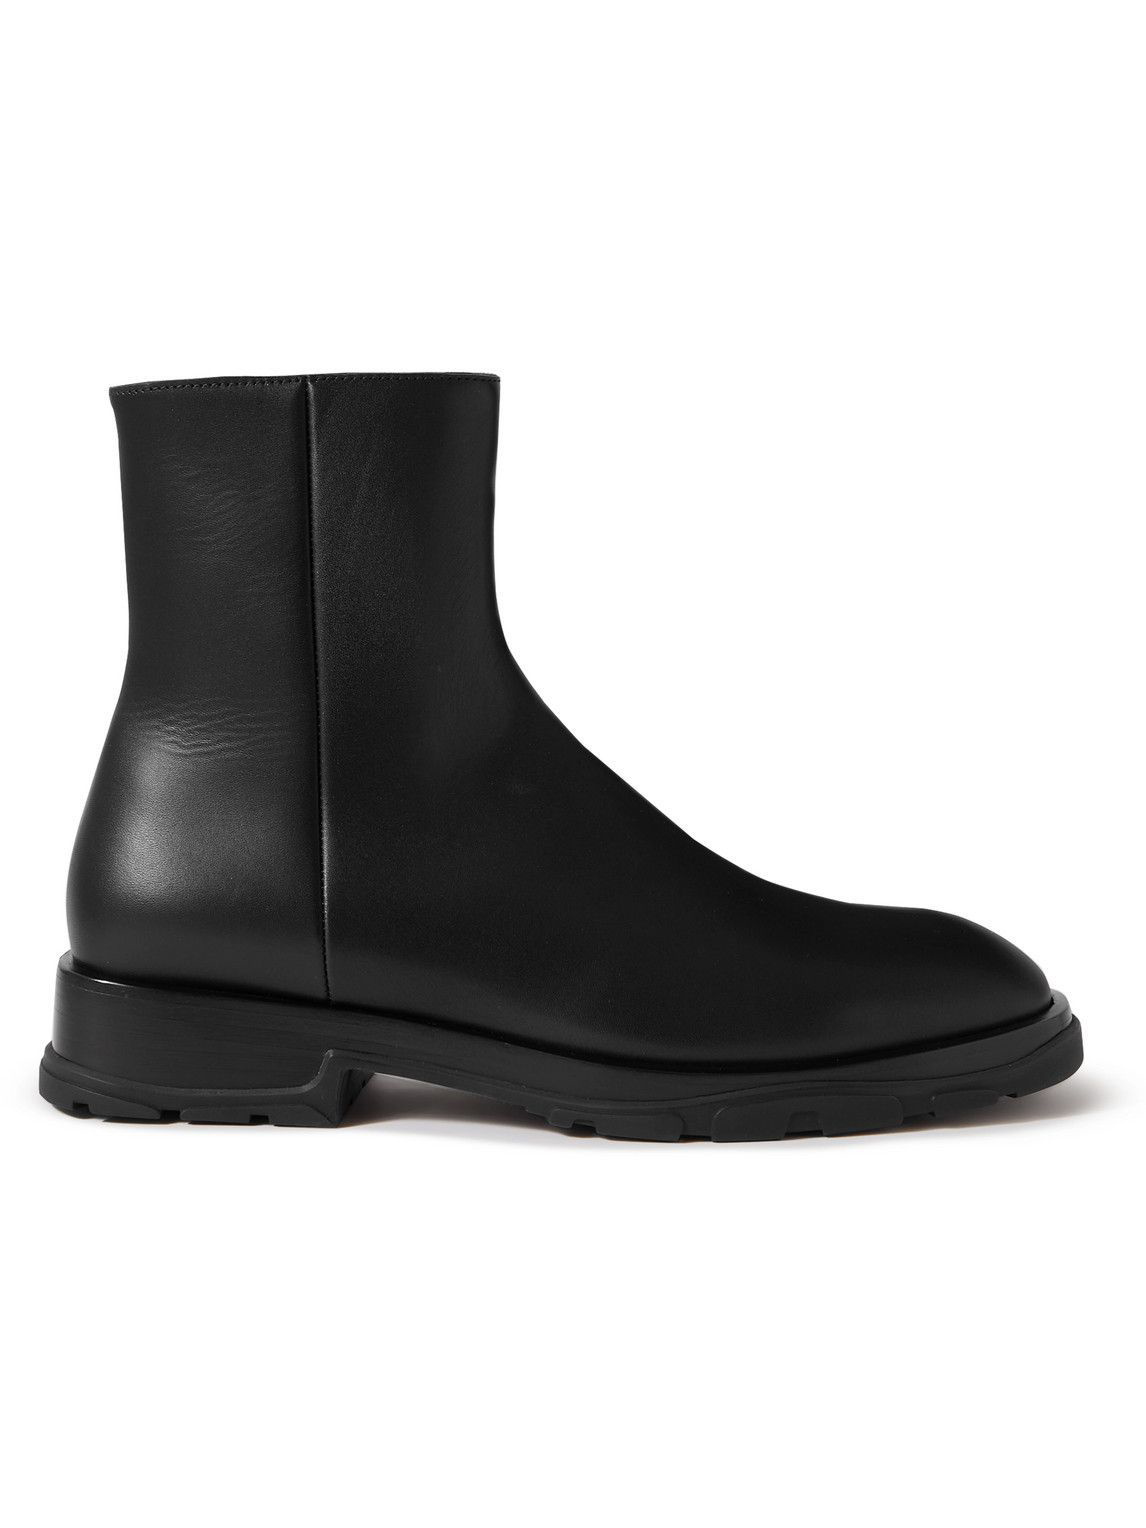 Alexander McQueen Wander Chelsea leather boots - Black